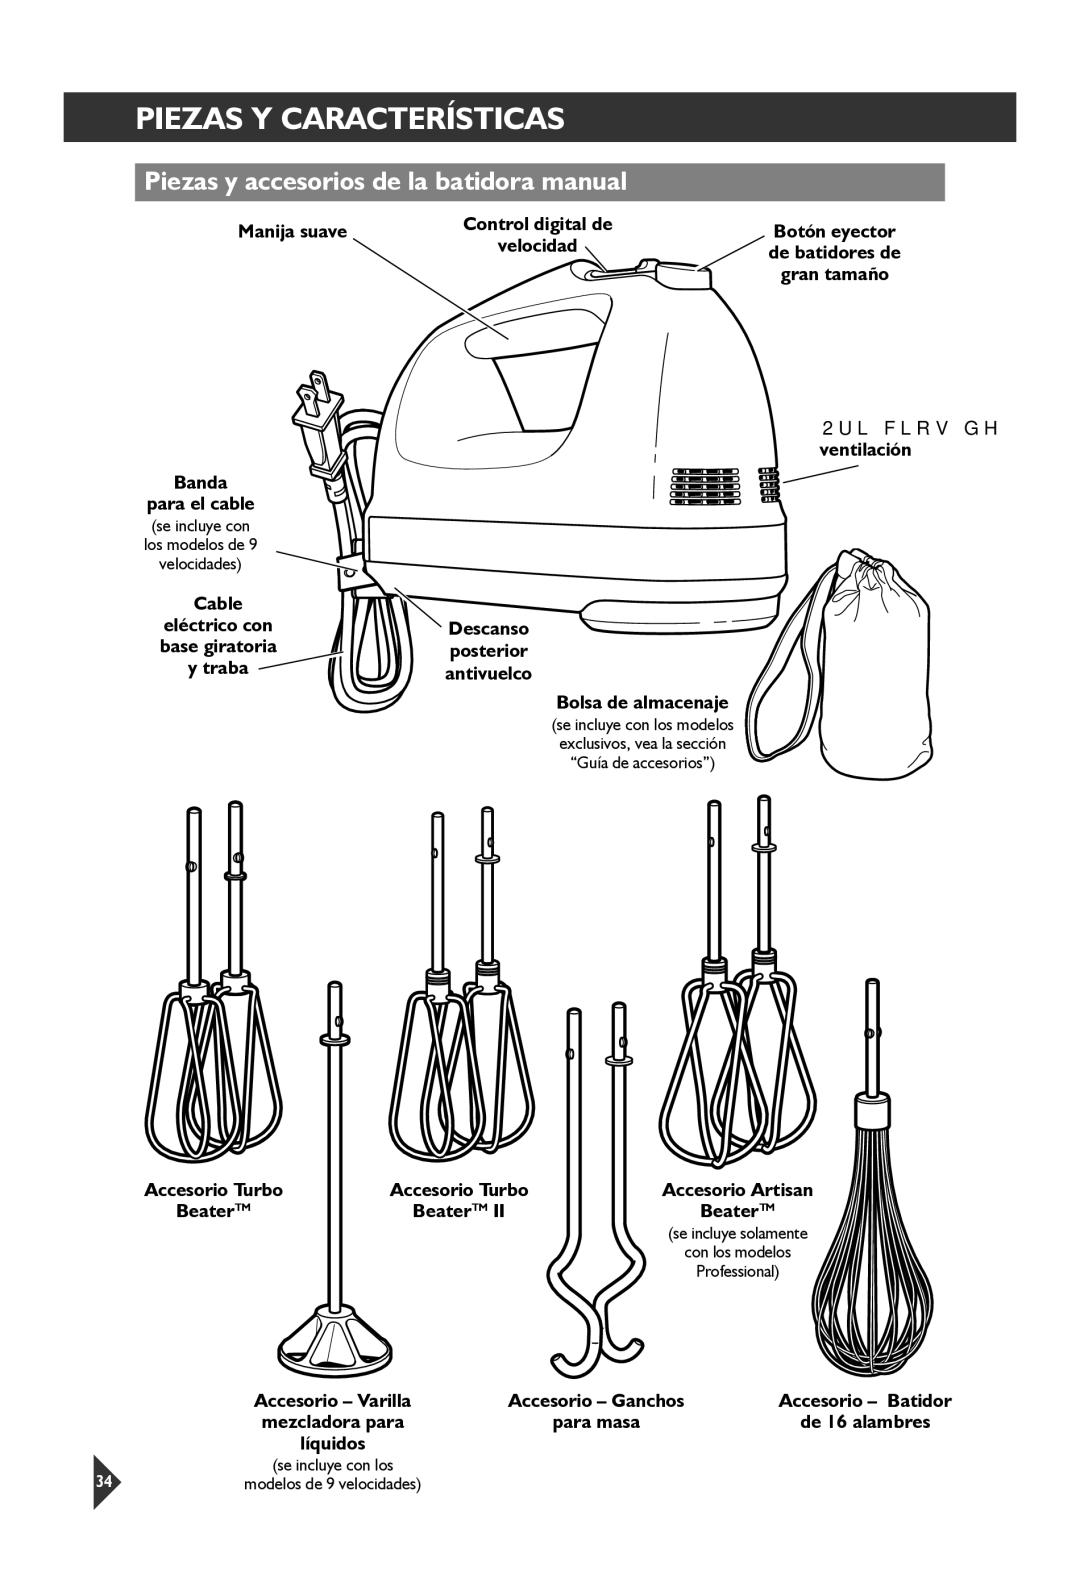 KitchenAid KHM92, KHM72 Piezas Y Características, Piezas y accesorios de la batidora manual 